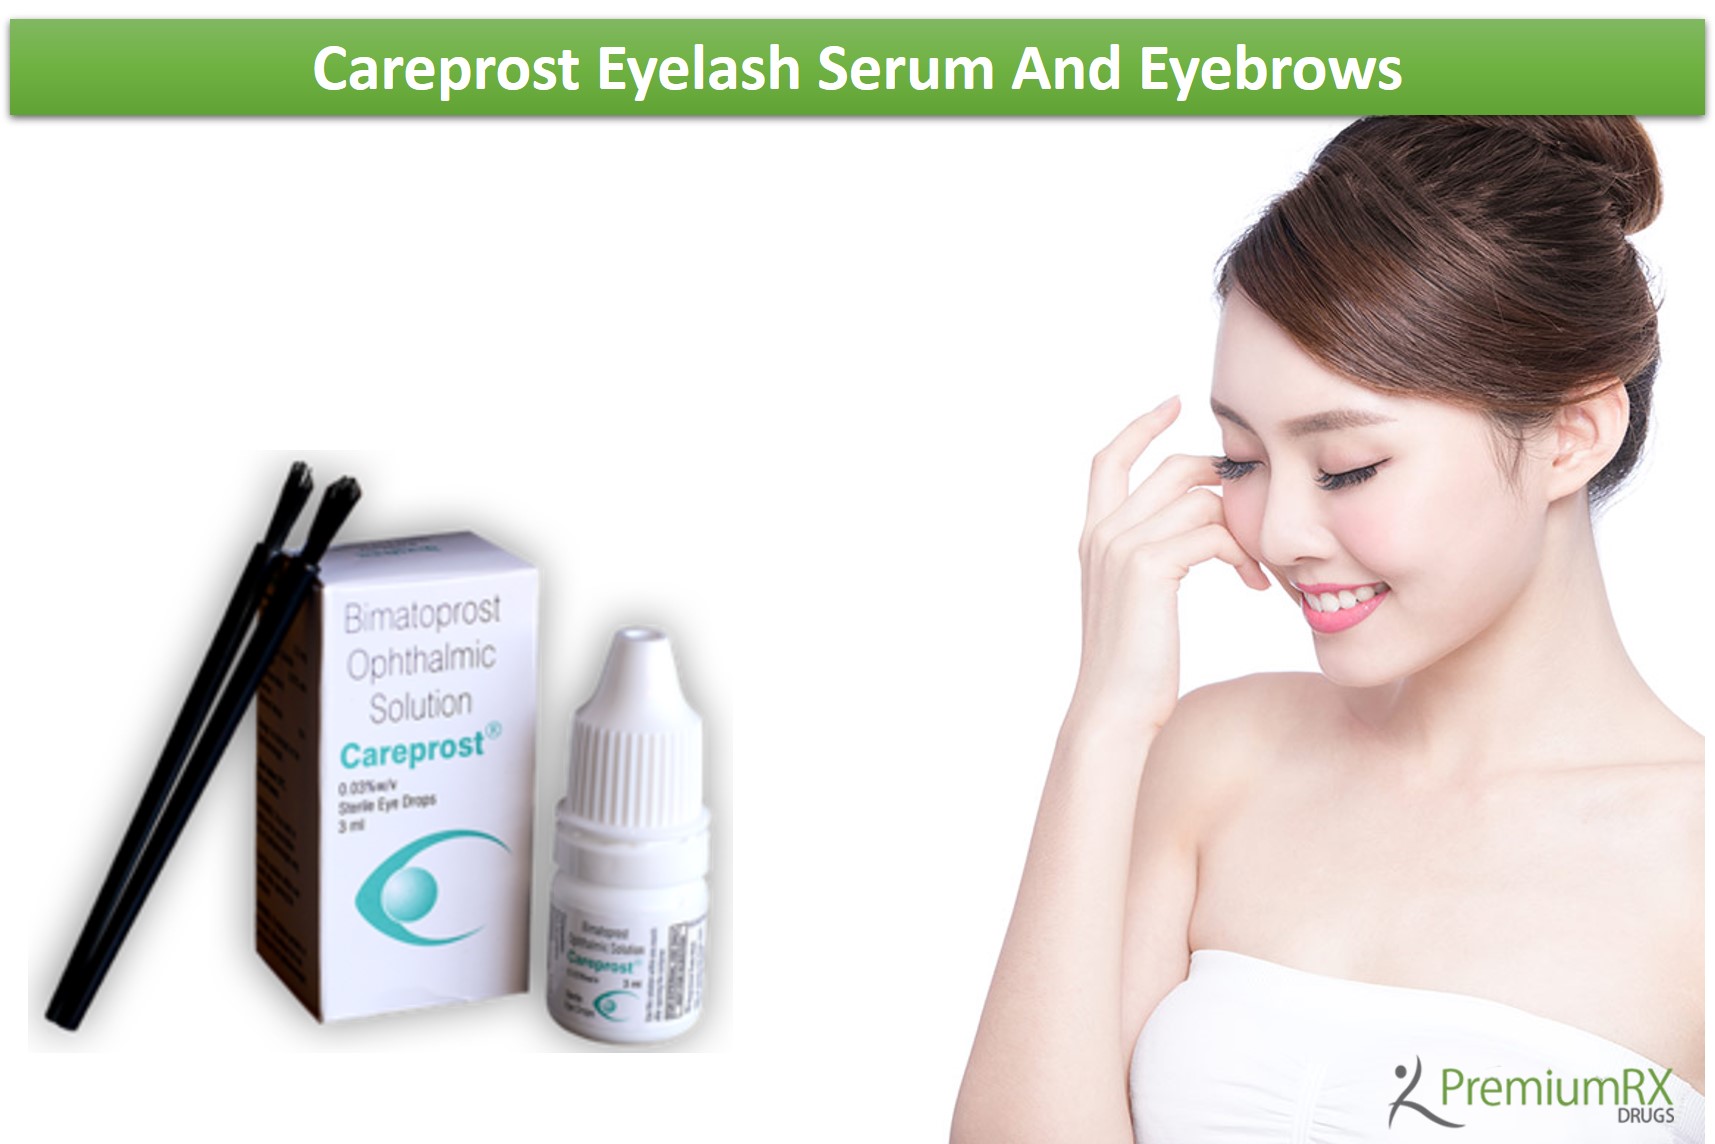 Careprost Eyelash Serum And Eyebrows